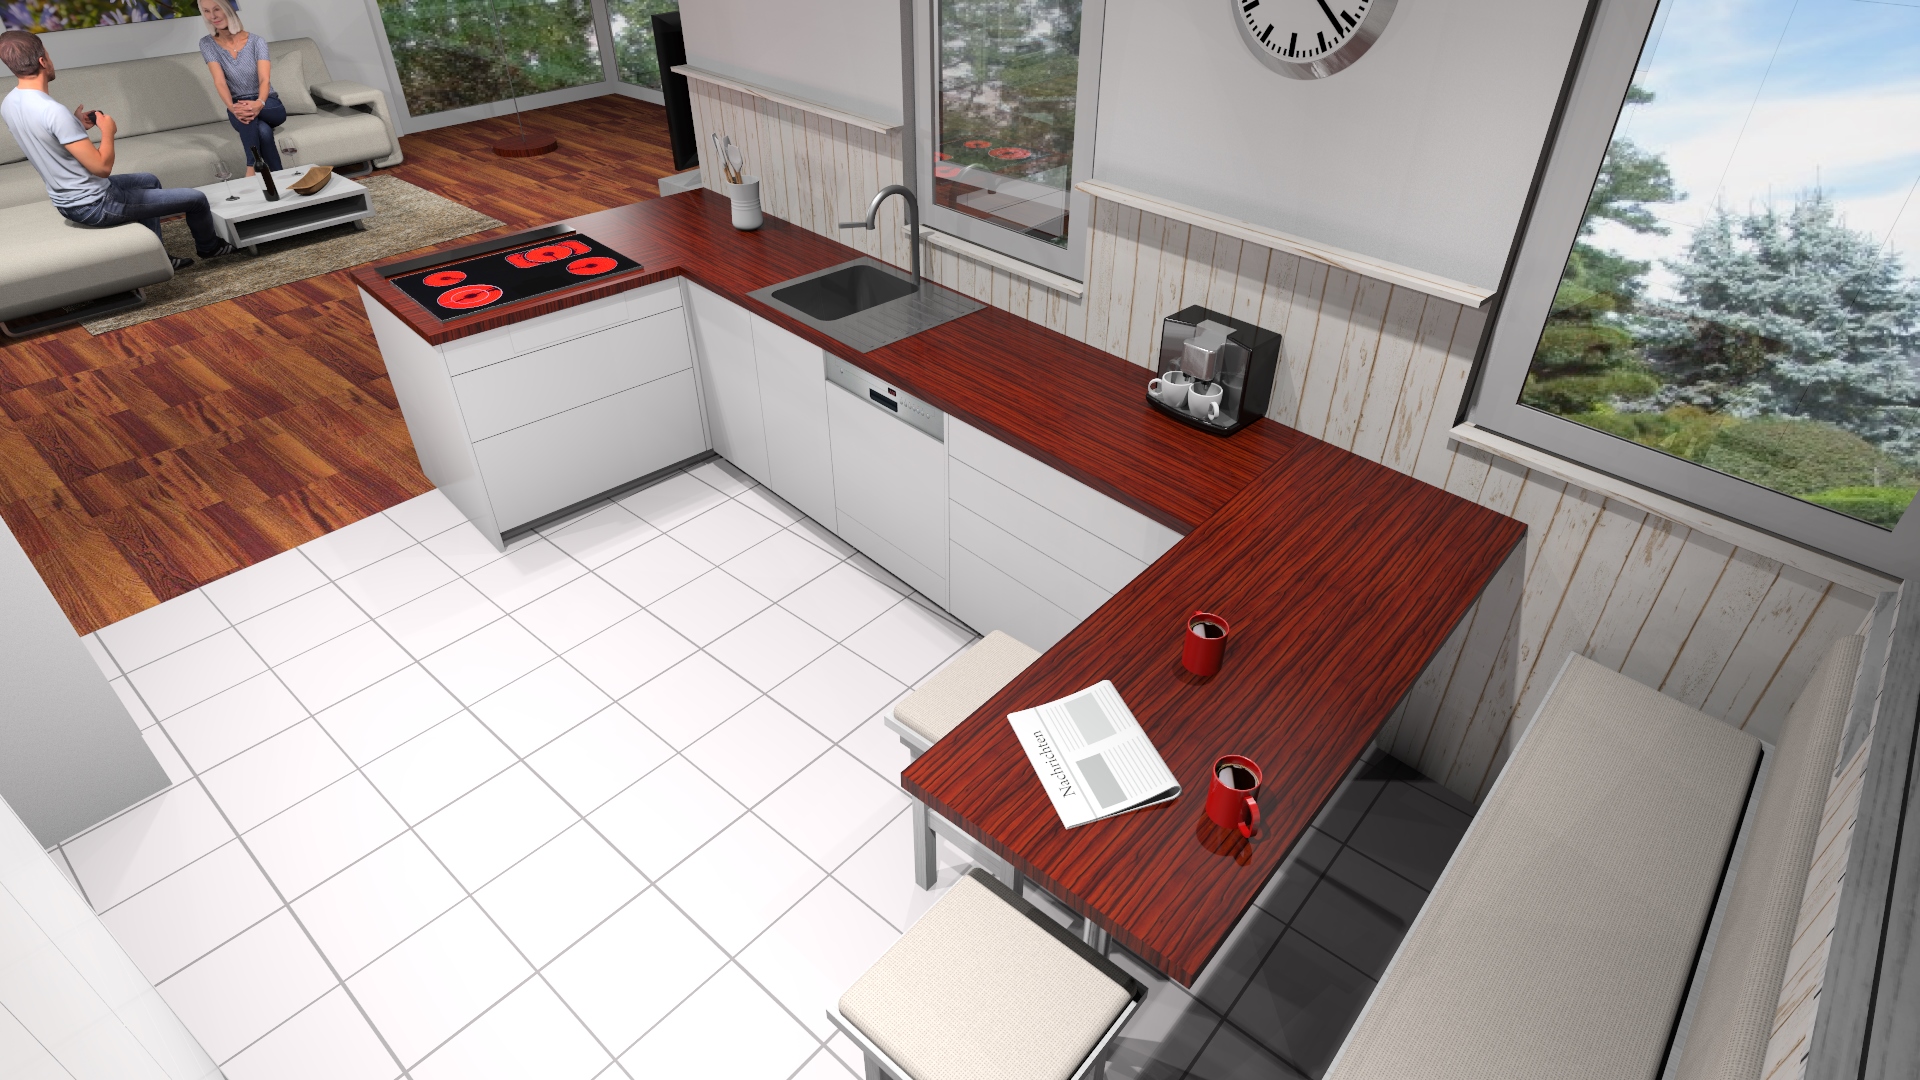 Visualisierung Küchenausbau für Winni-Maus-Innenausbau